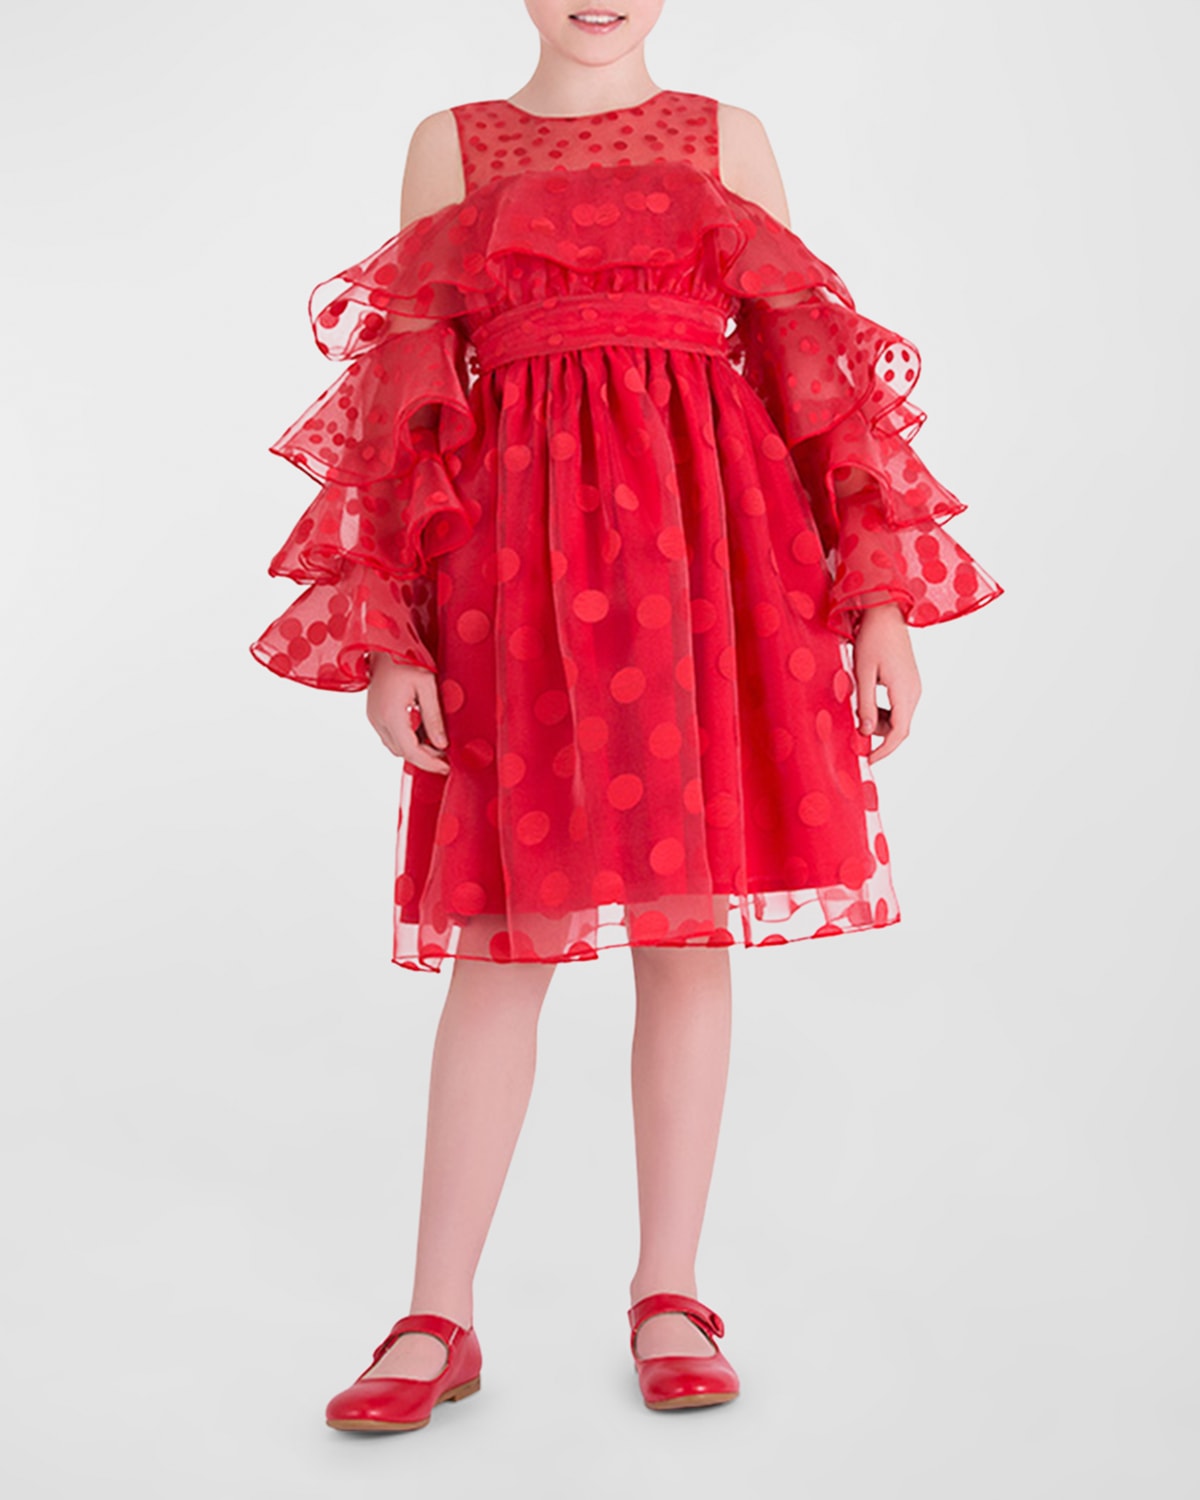 Mama Luma Kids' Girl's Polka Dot Ruffle Dress In Red